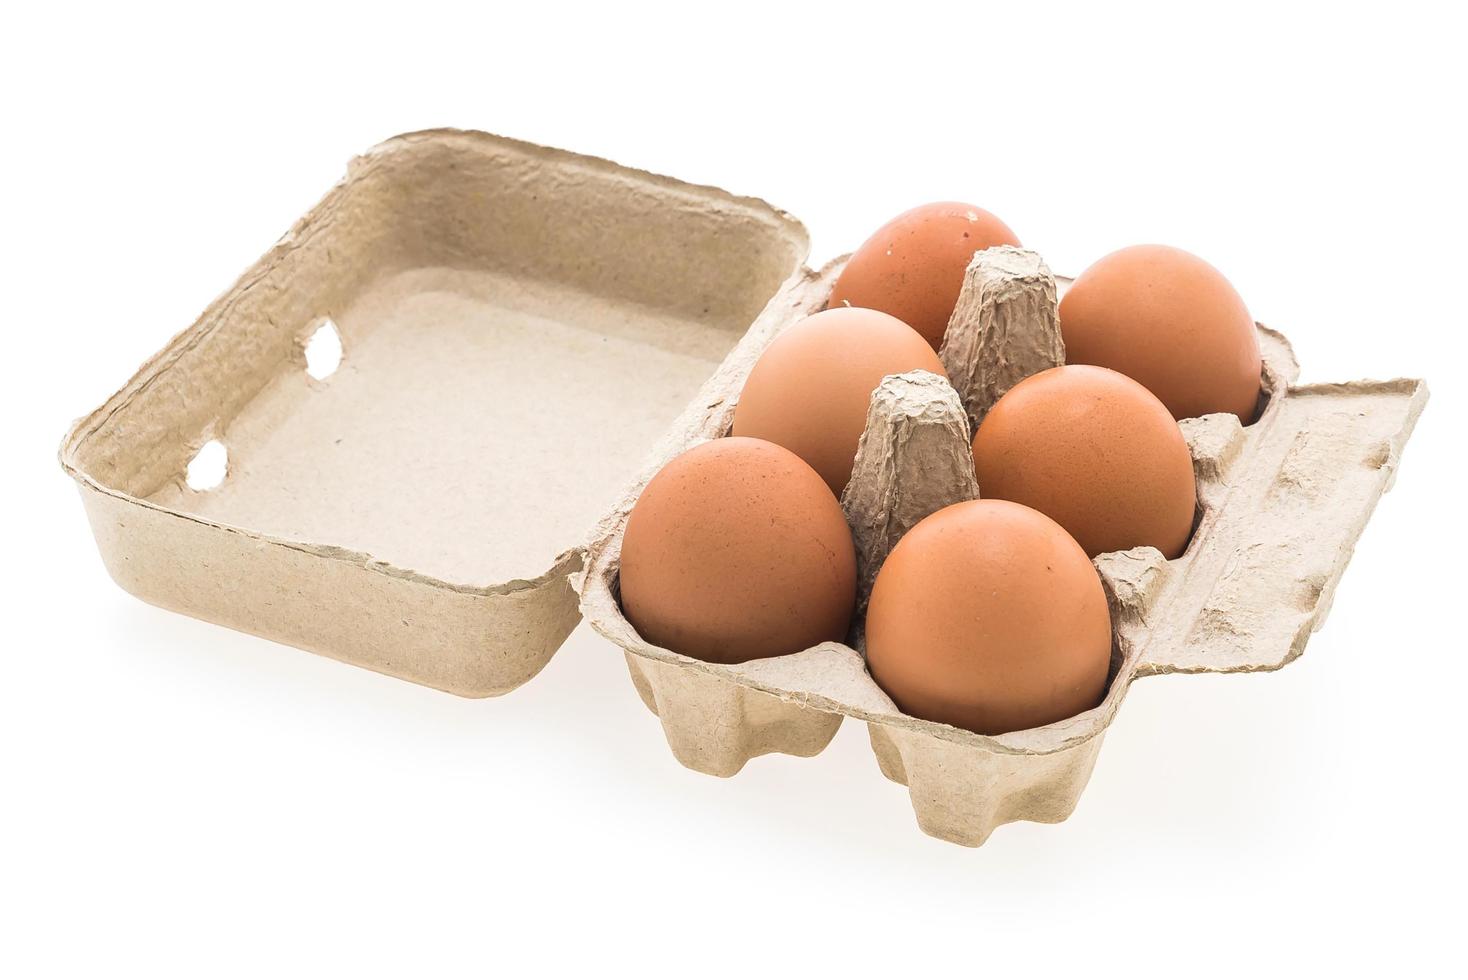 Eggs box isolated on white background photo